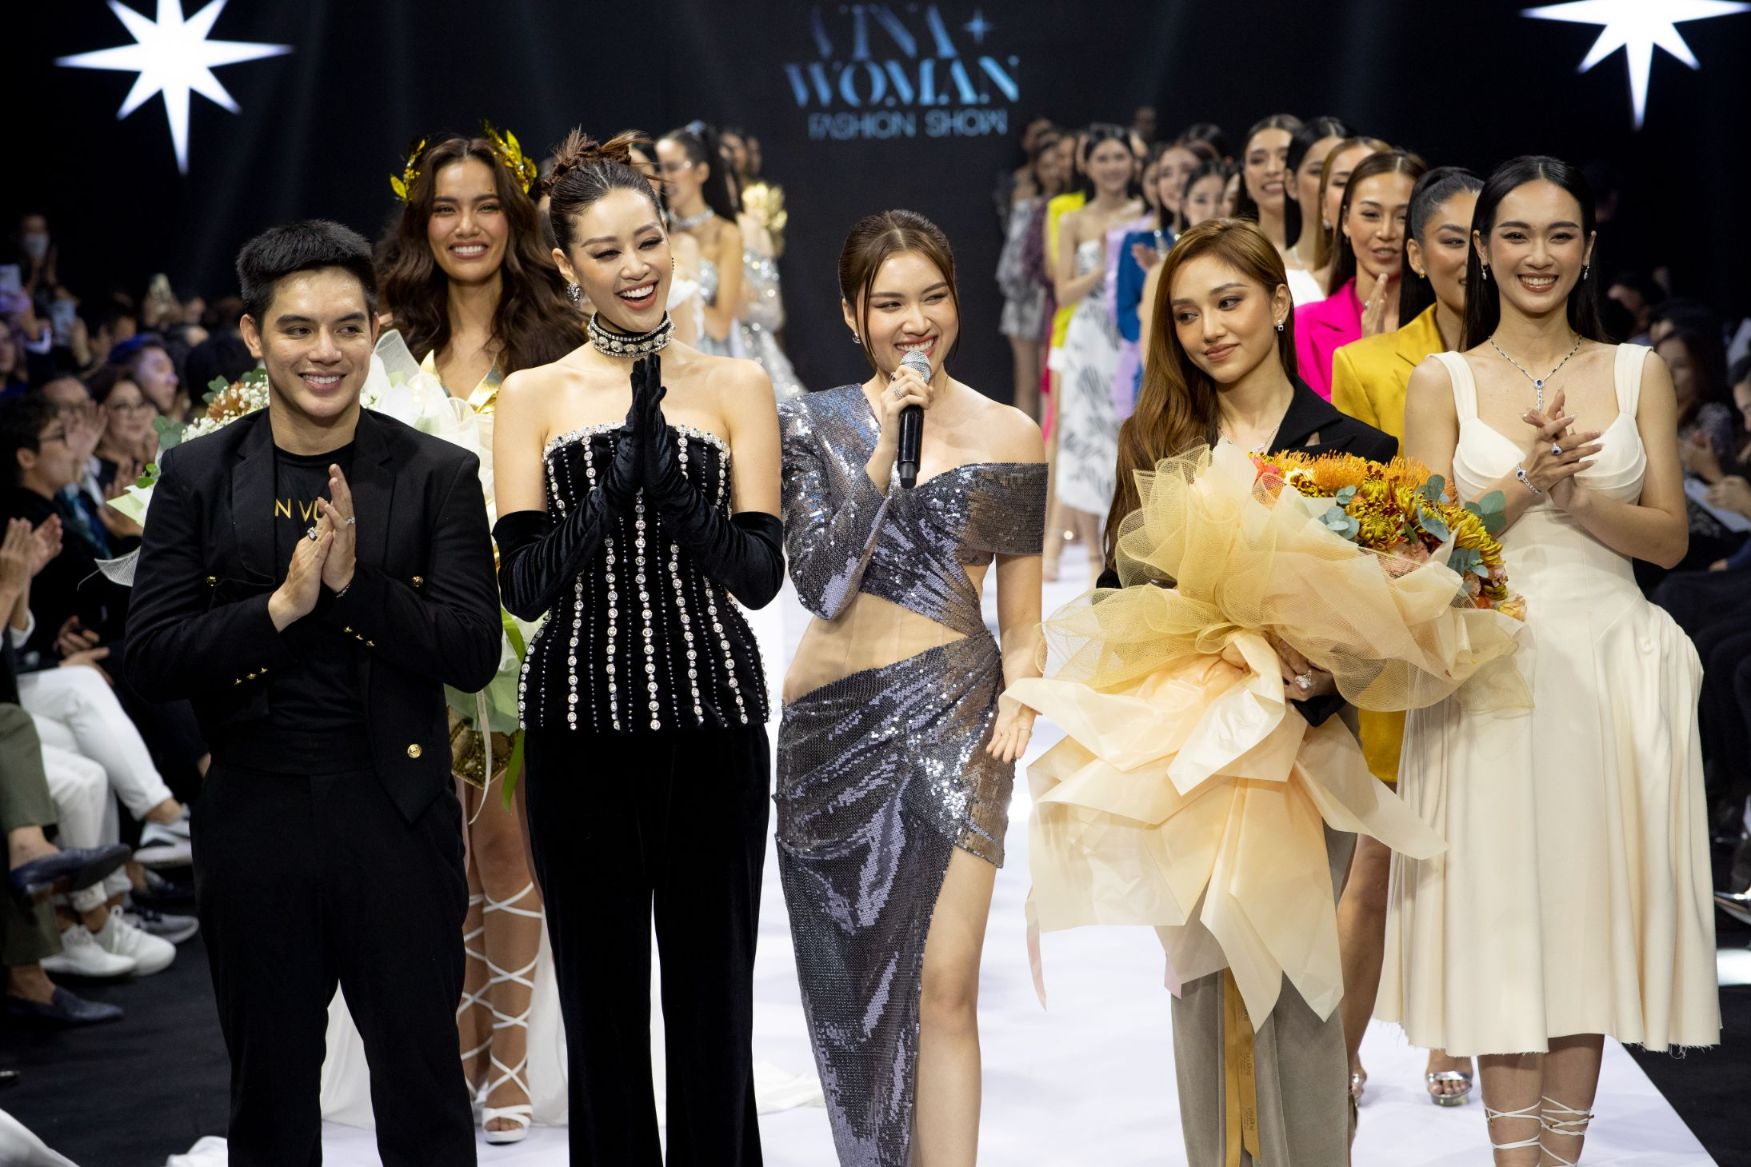 BST The Golden Woman của IJC Top 71 Hoa hậu Hoàn vũ Việt Nam 2022 bùng nổ sàn diễn Vinawoman Fashion Show